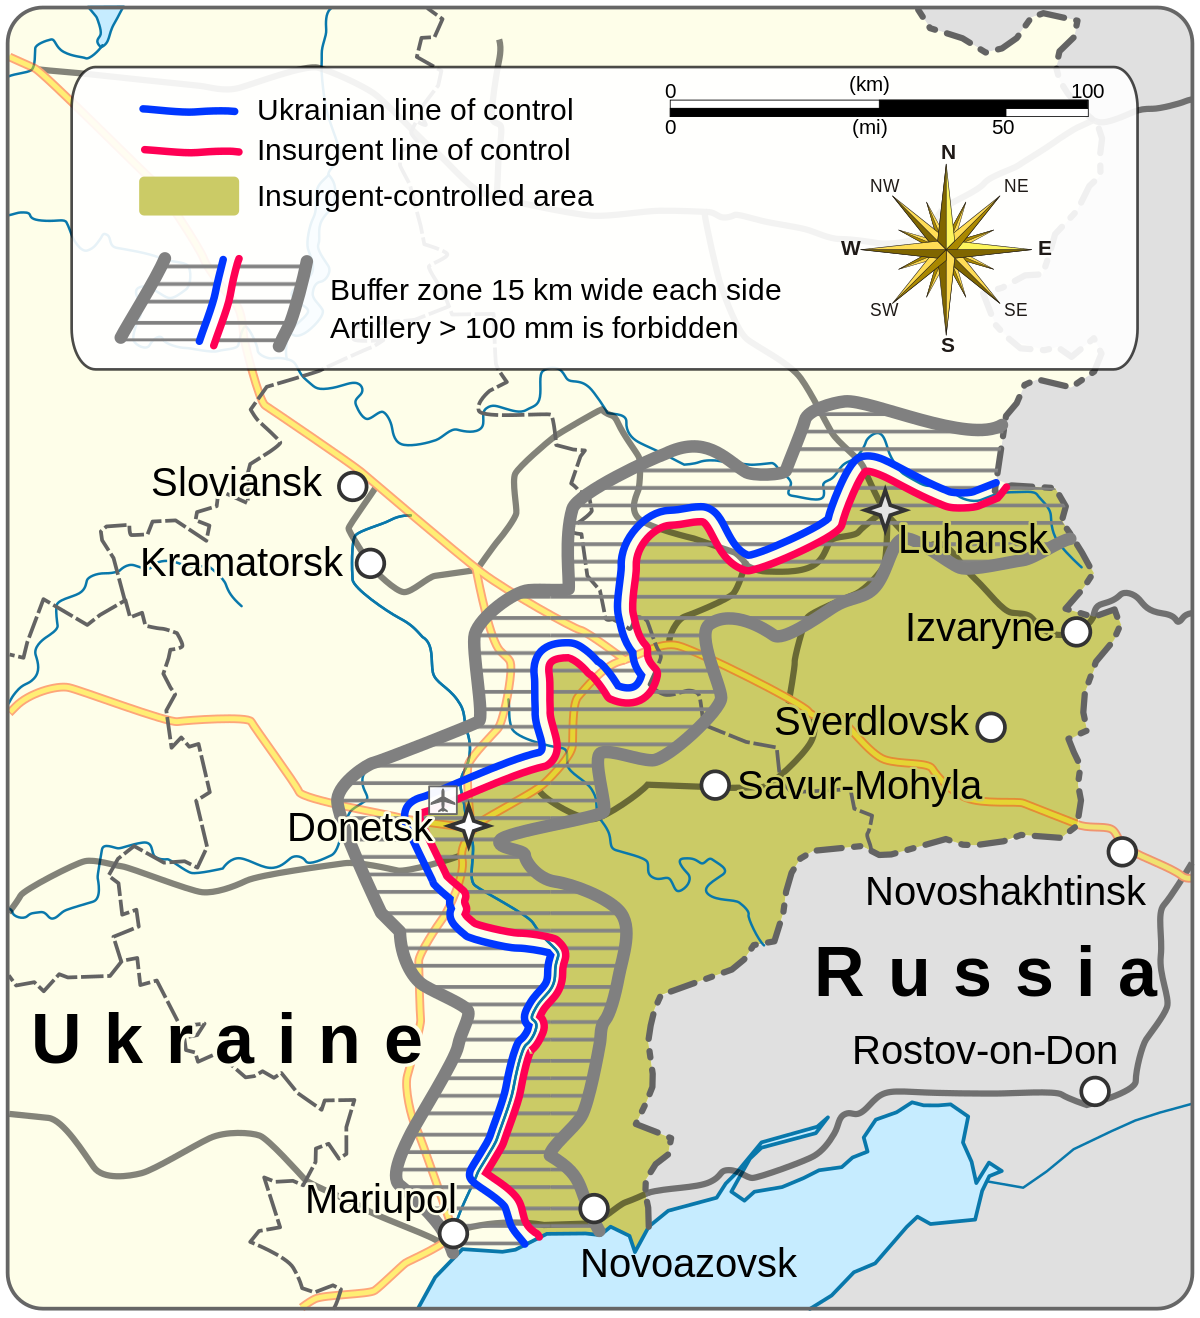 Minsk agreements - Wikipedia